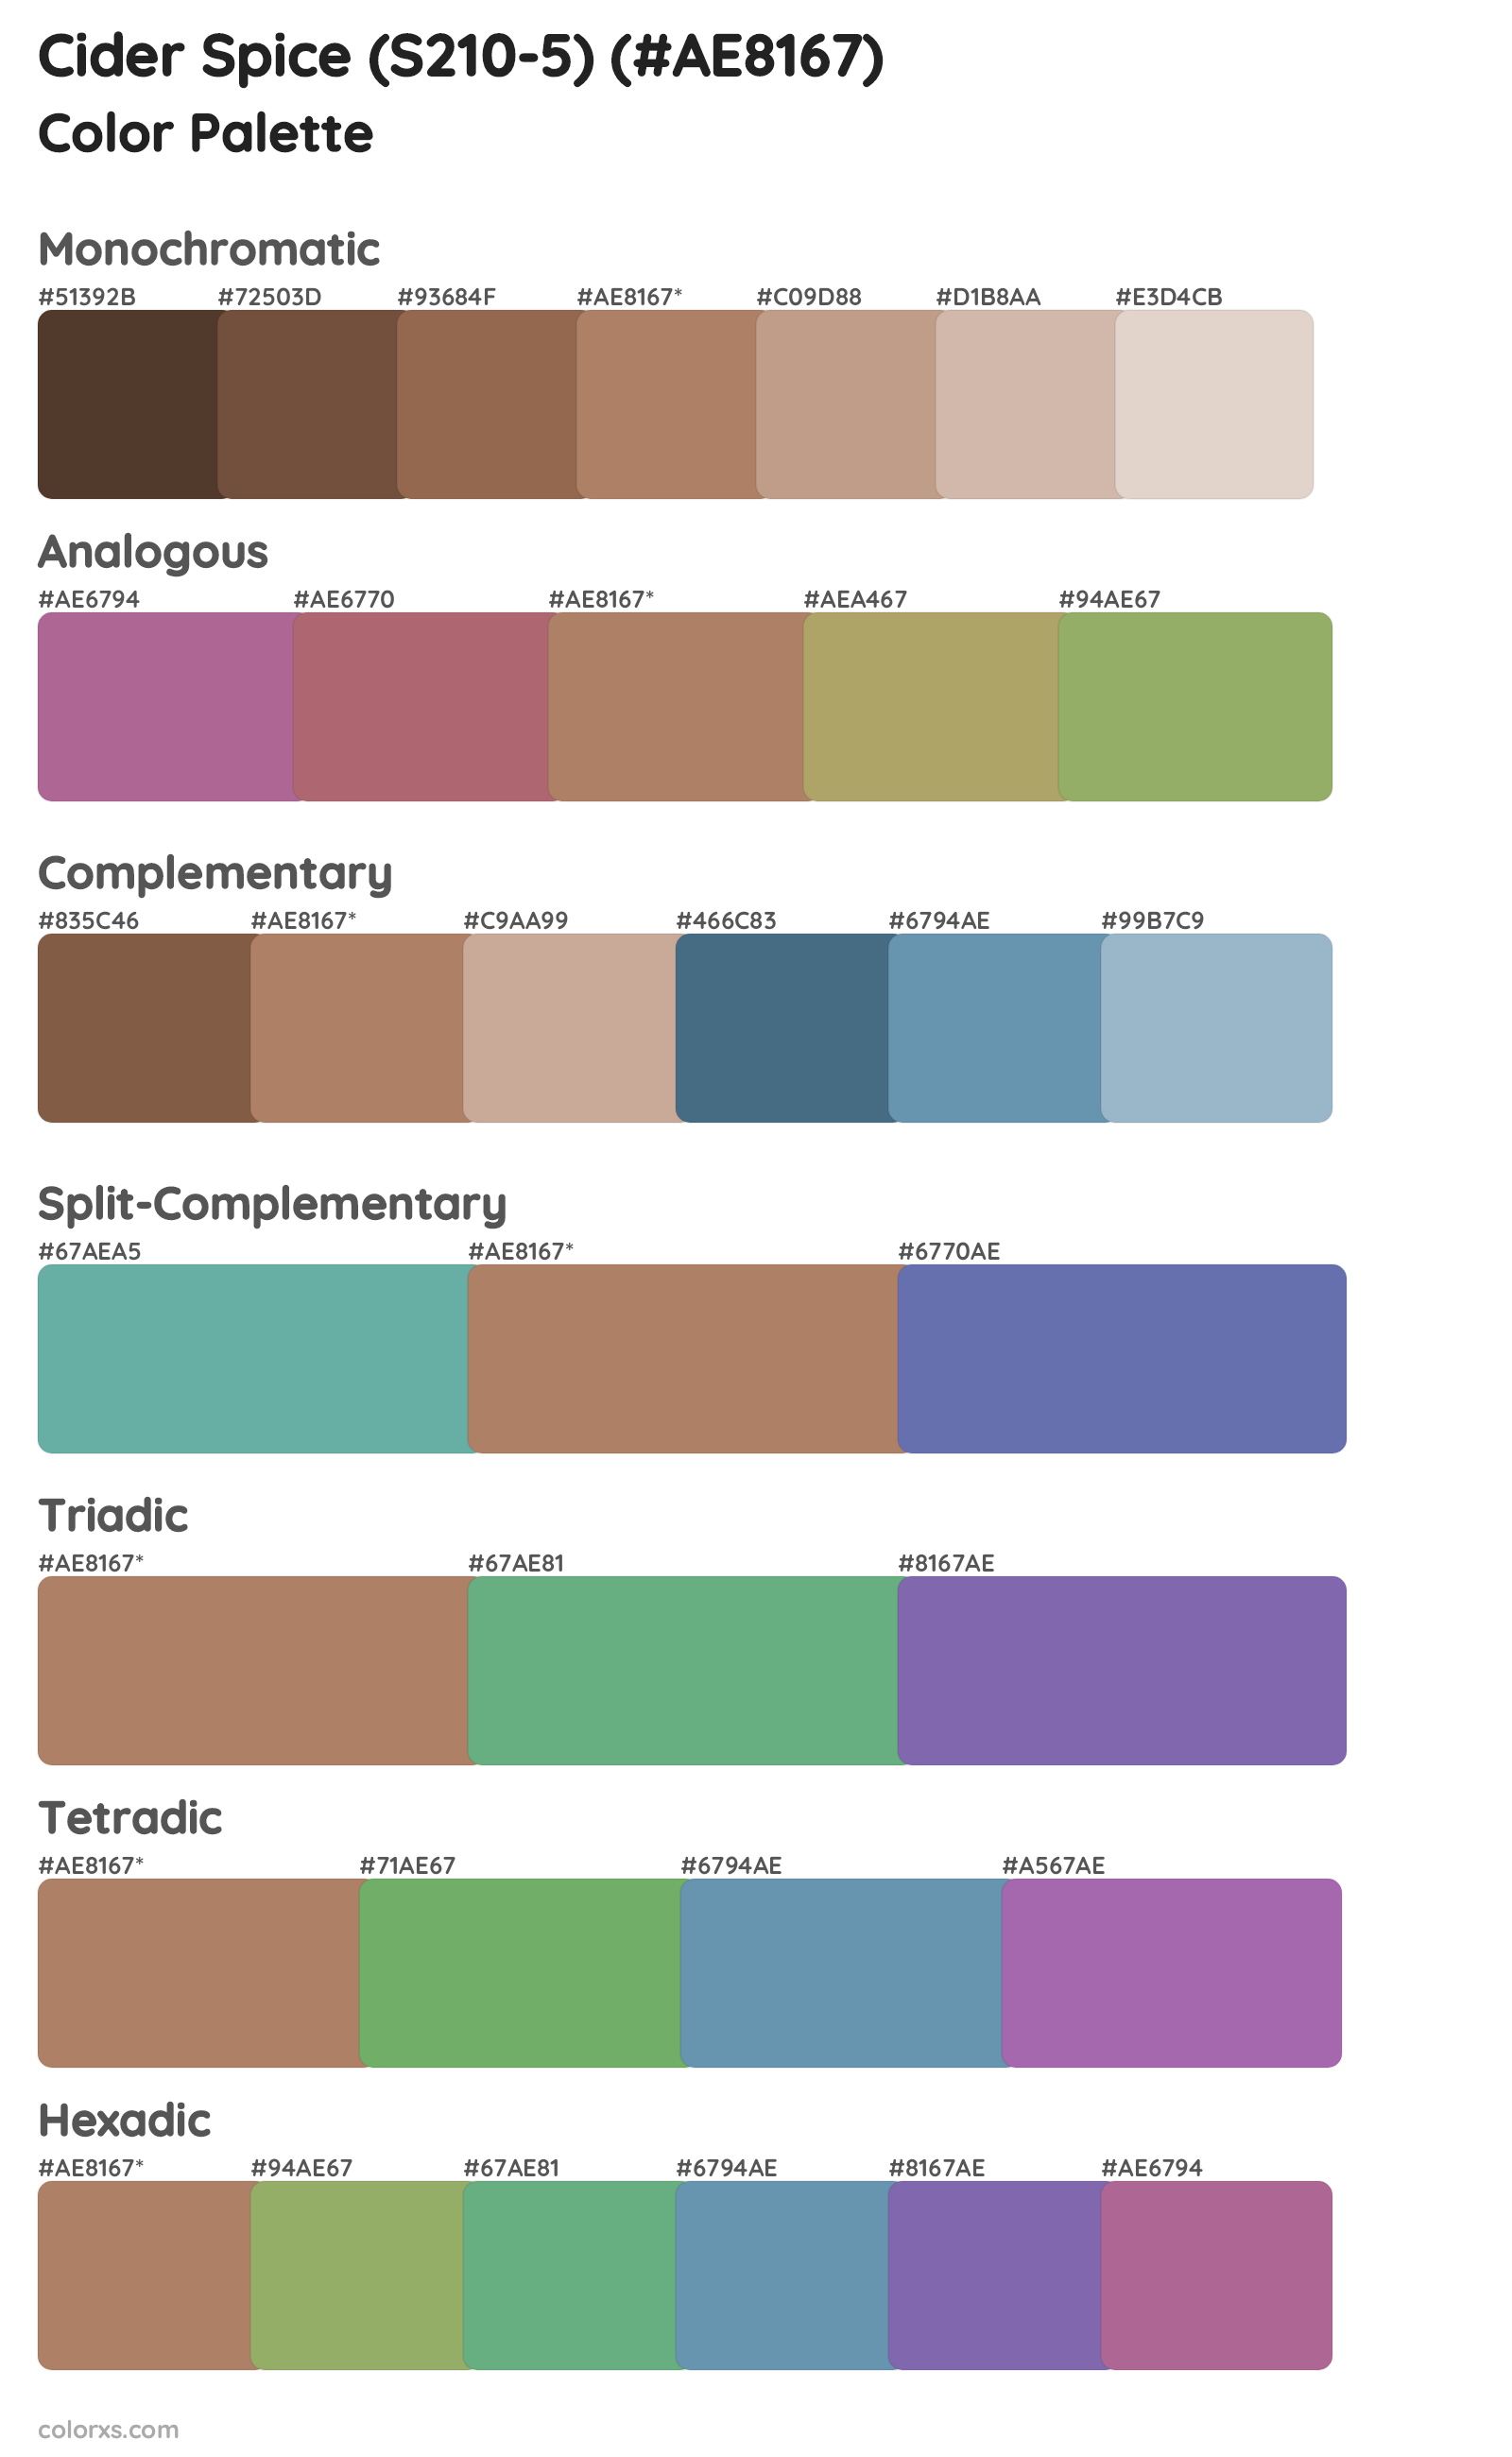 Cider Spice (S210-5) Color Scheme Palettes